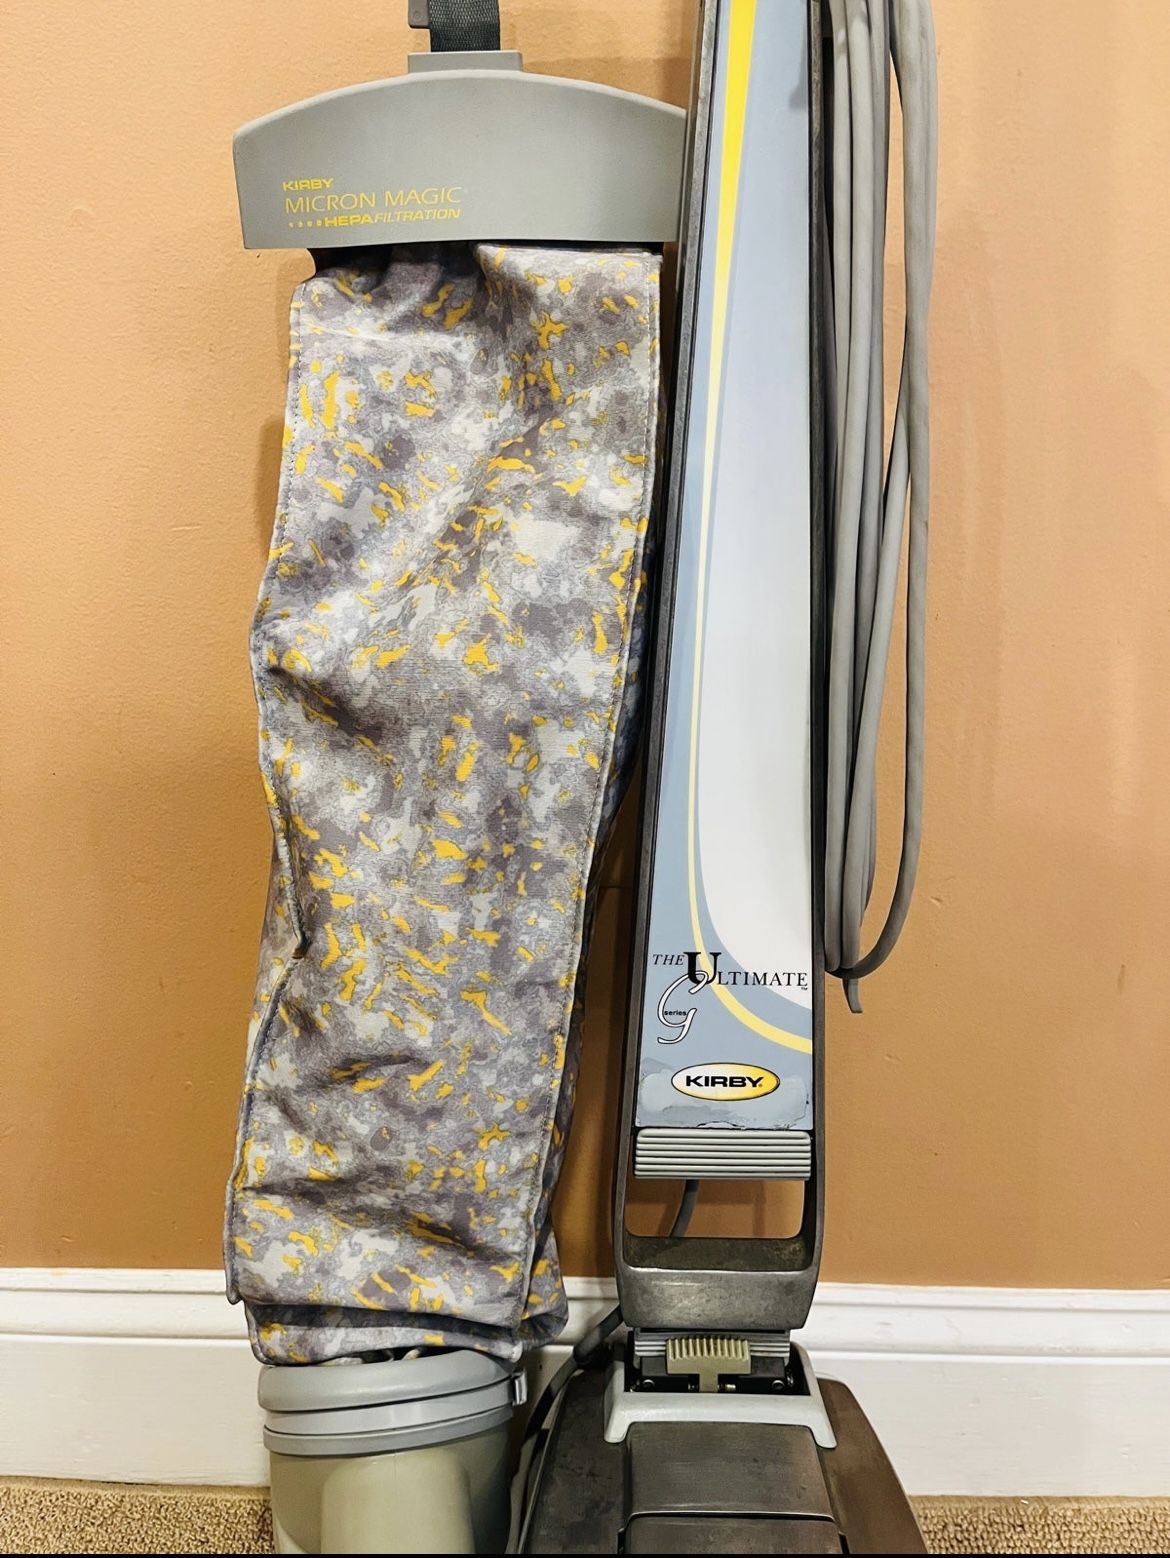 Kirby Ultimate G vacuum cleaner